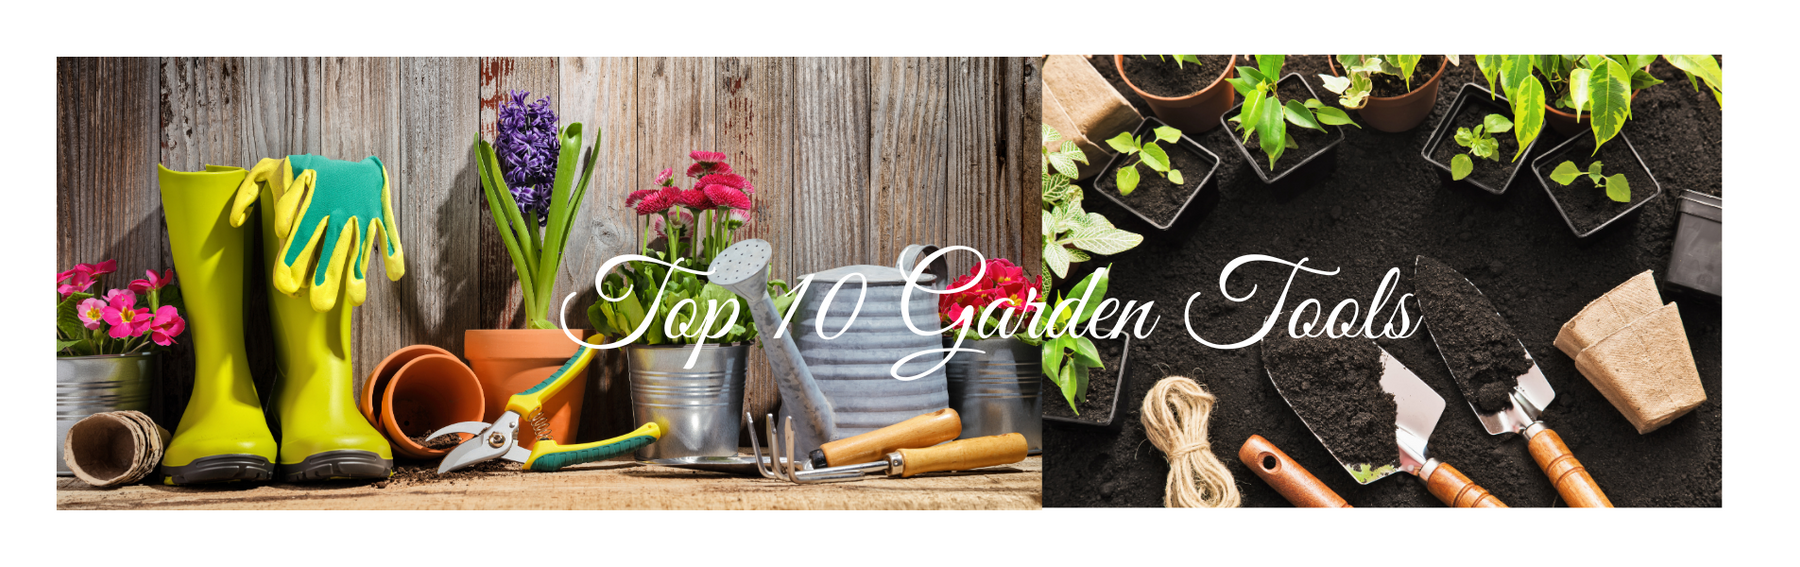 Top 10 Garden Tools - CGASPL